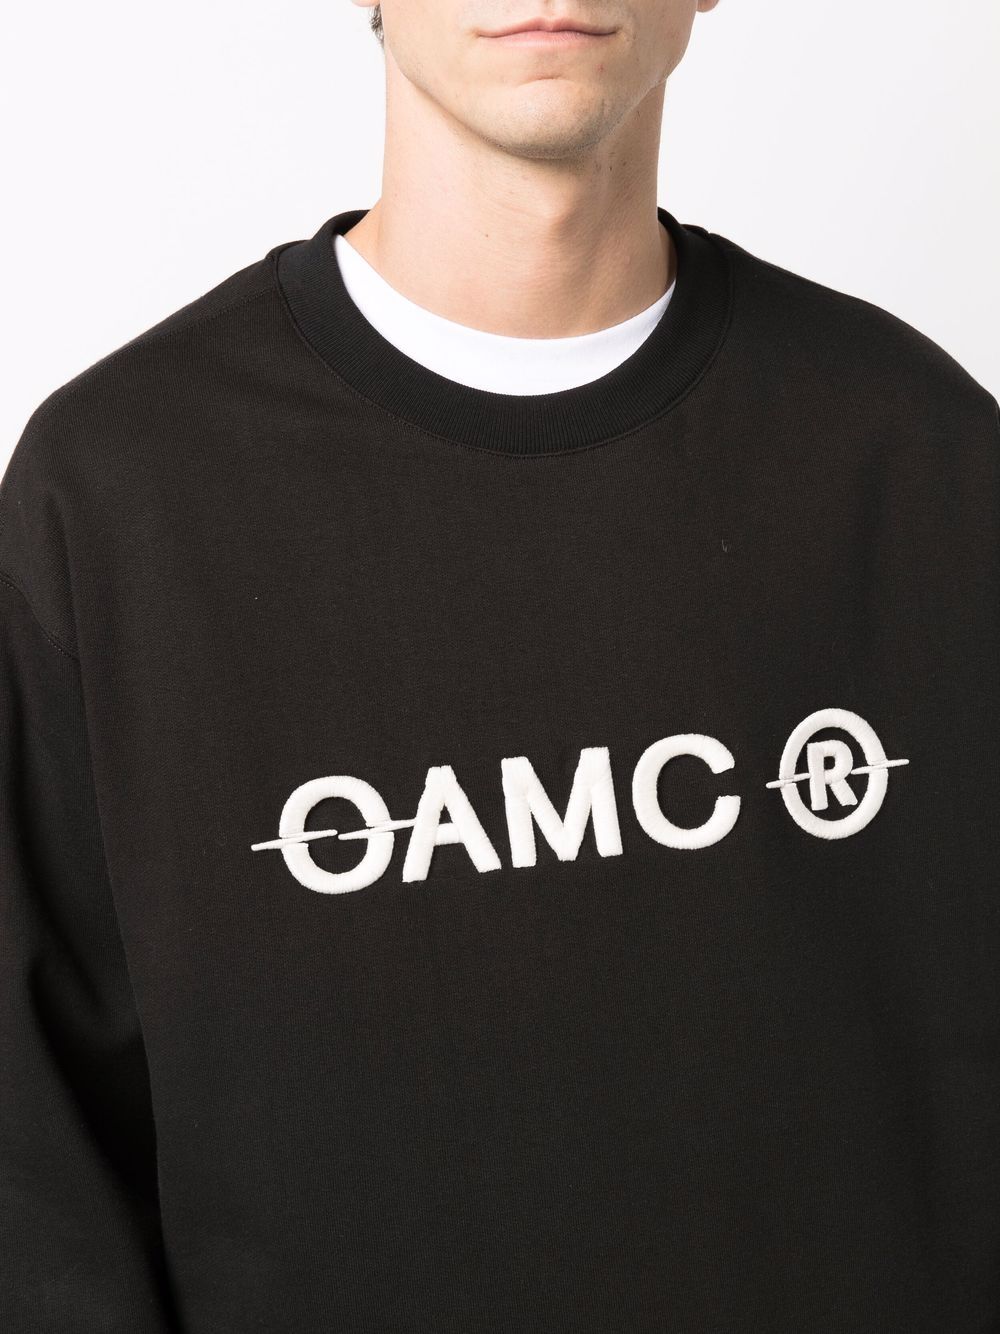 OAMC ロゴ プルオーバー 通販 - FARFETCH